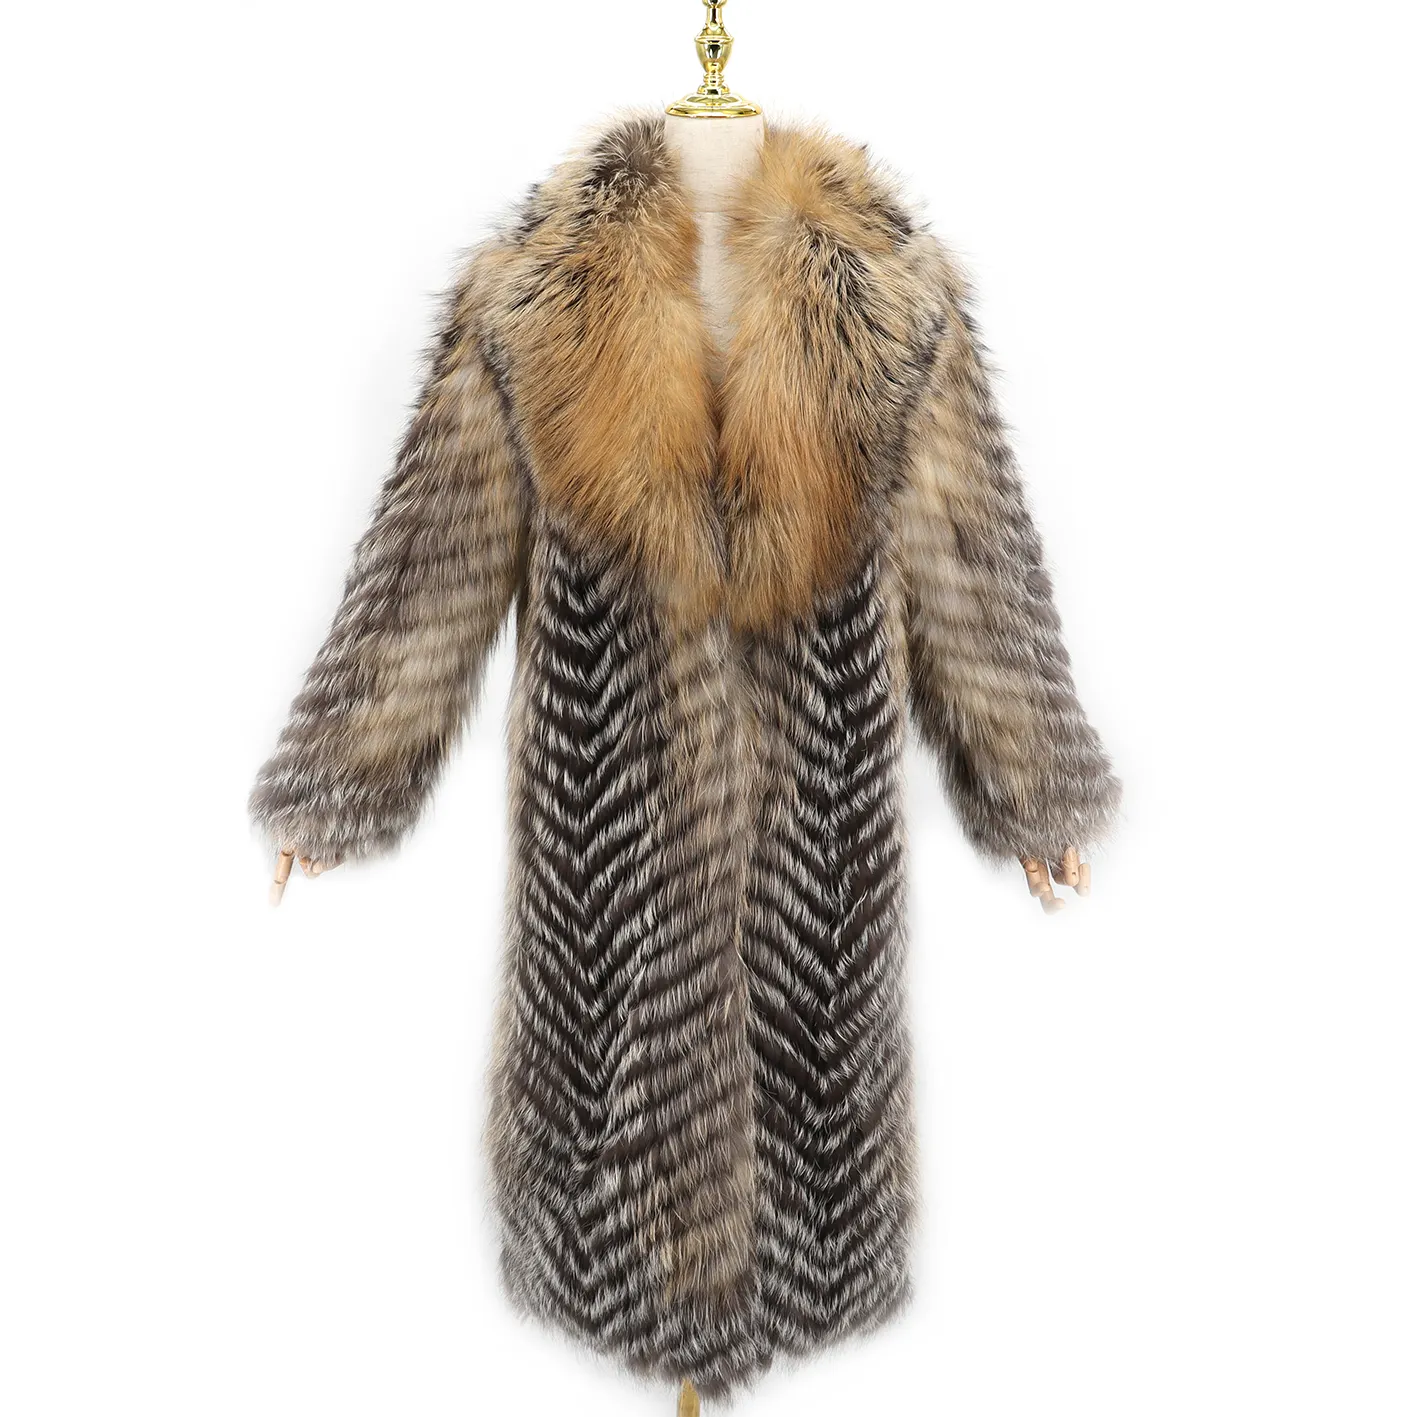 Moda gerçek tilki kürk uzun kalın tilki kürk ceket dokuma tilki kürk ceket